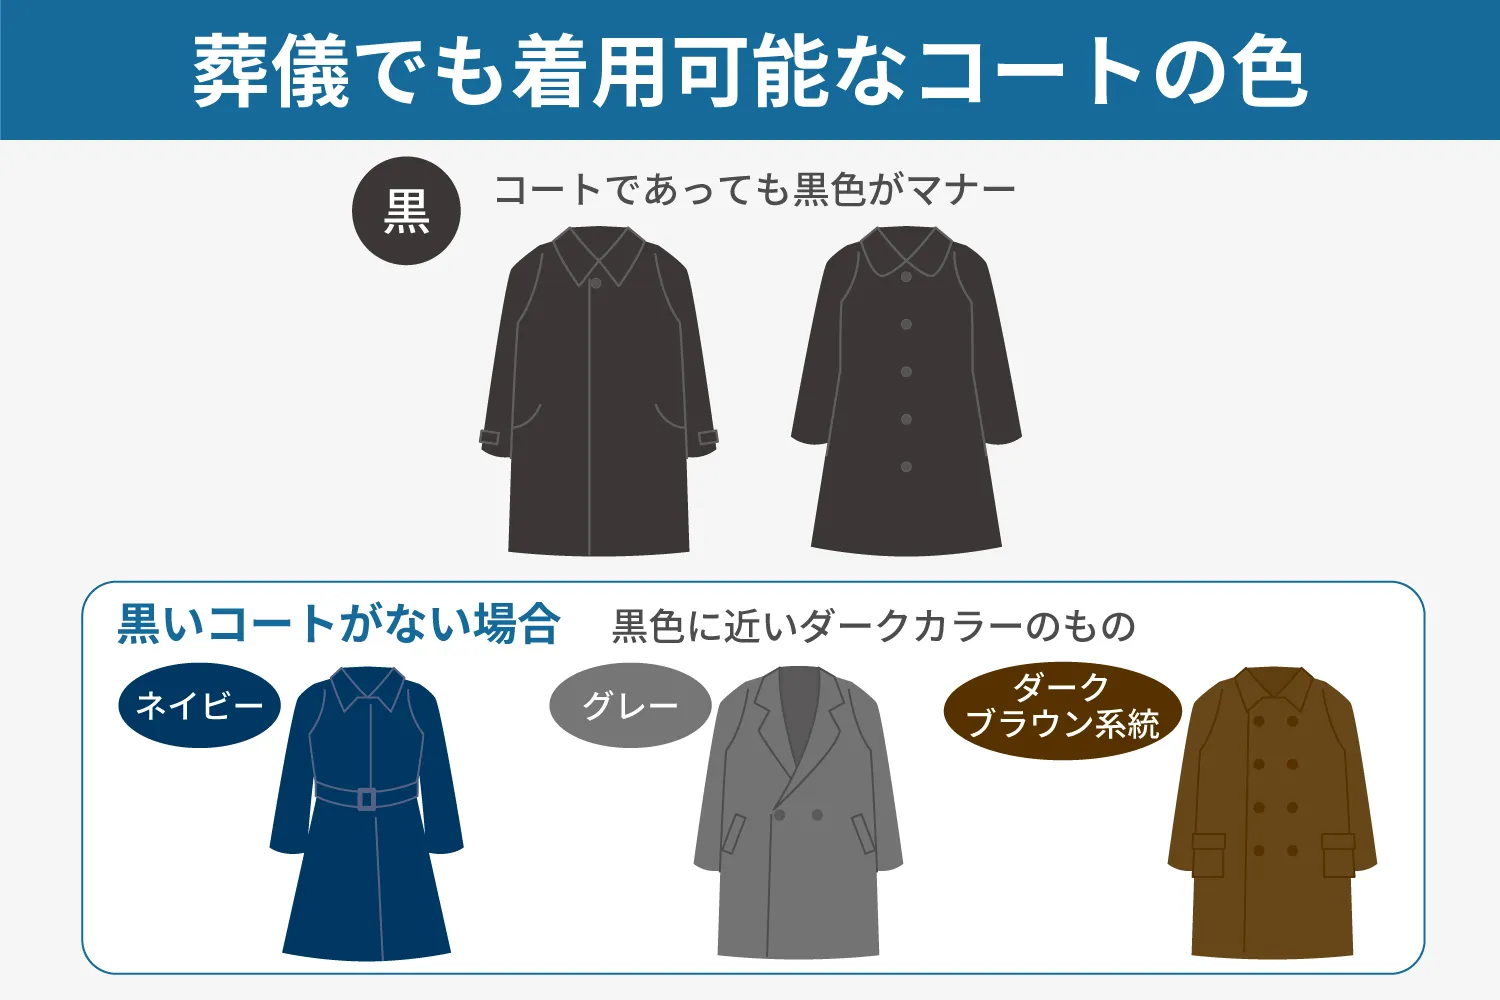 葬儀でも着用可能なコートの色解説図